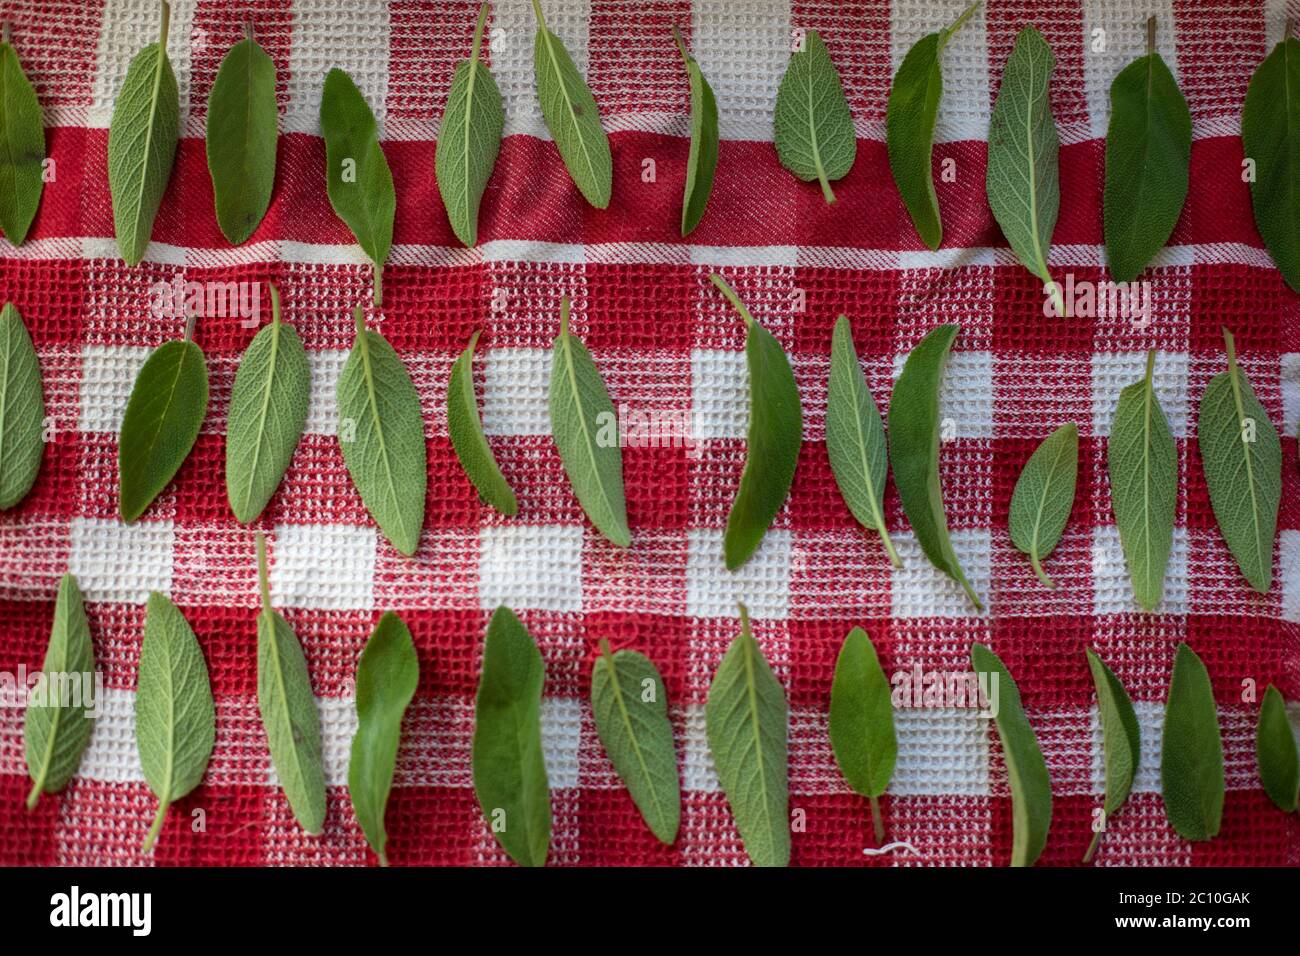 Sécher les feuilles de sauge (salvia) sur une nappe rouge et blanche Banque D'Images